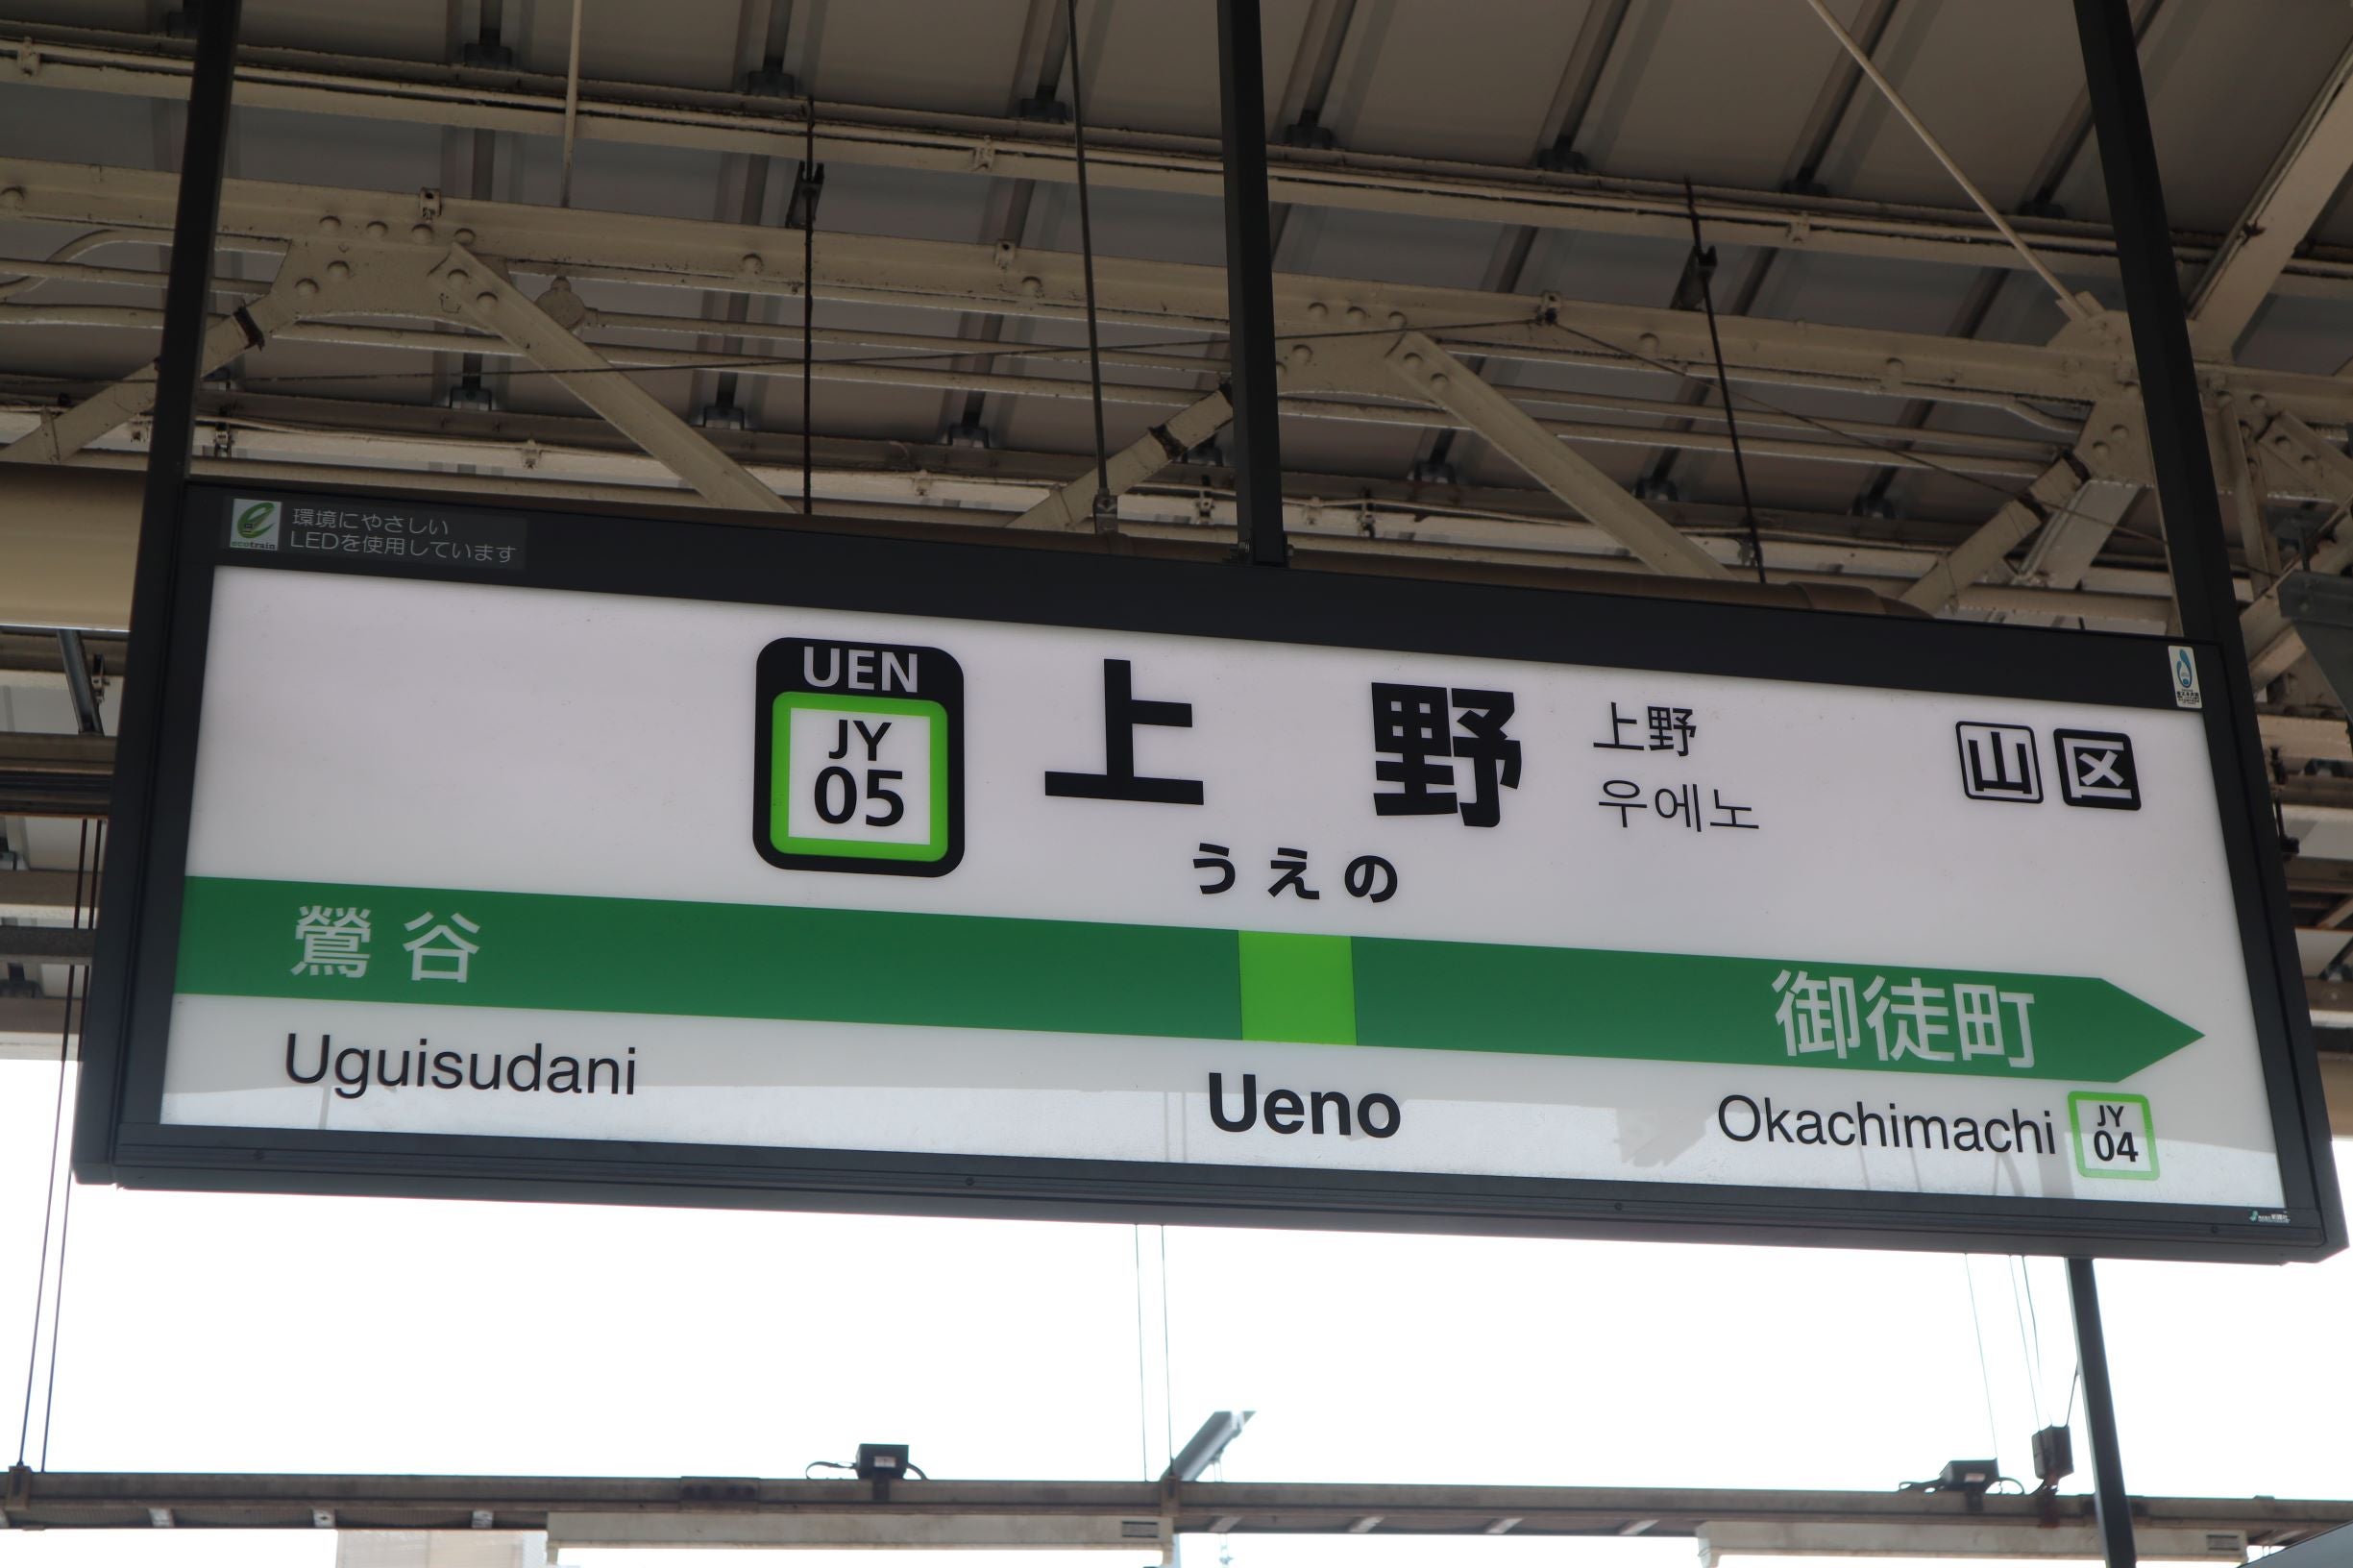 上野駅の駅名標がたくさんあって面白い | にちかのブログ